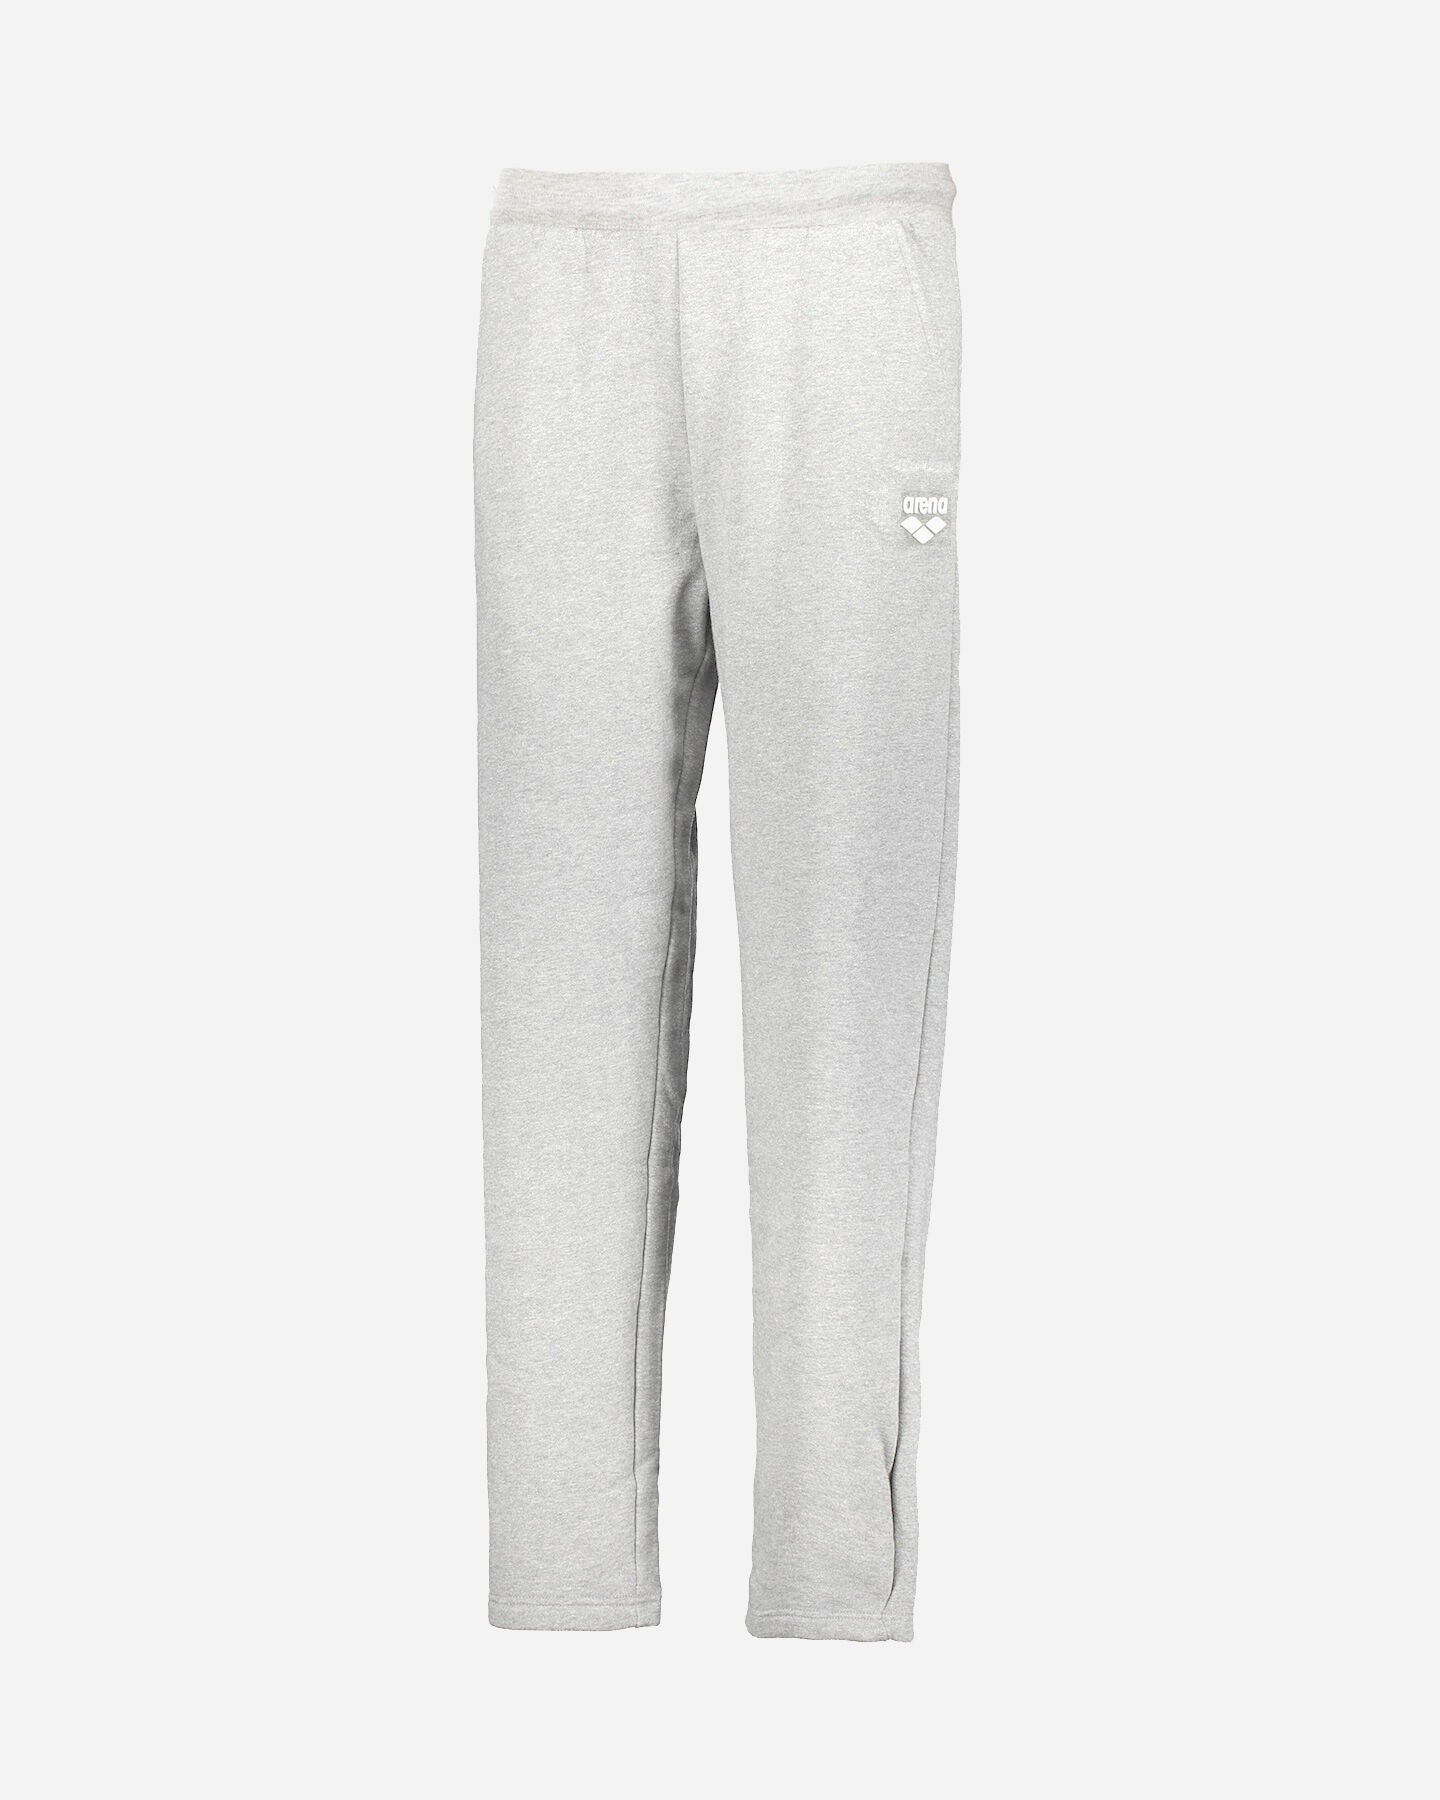  Pantalone ARENA SMALL LOGO M S4074620|GM03|S scatto 4